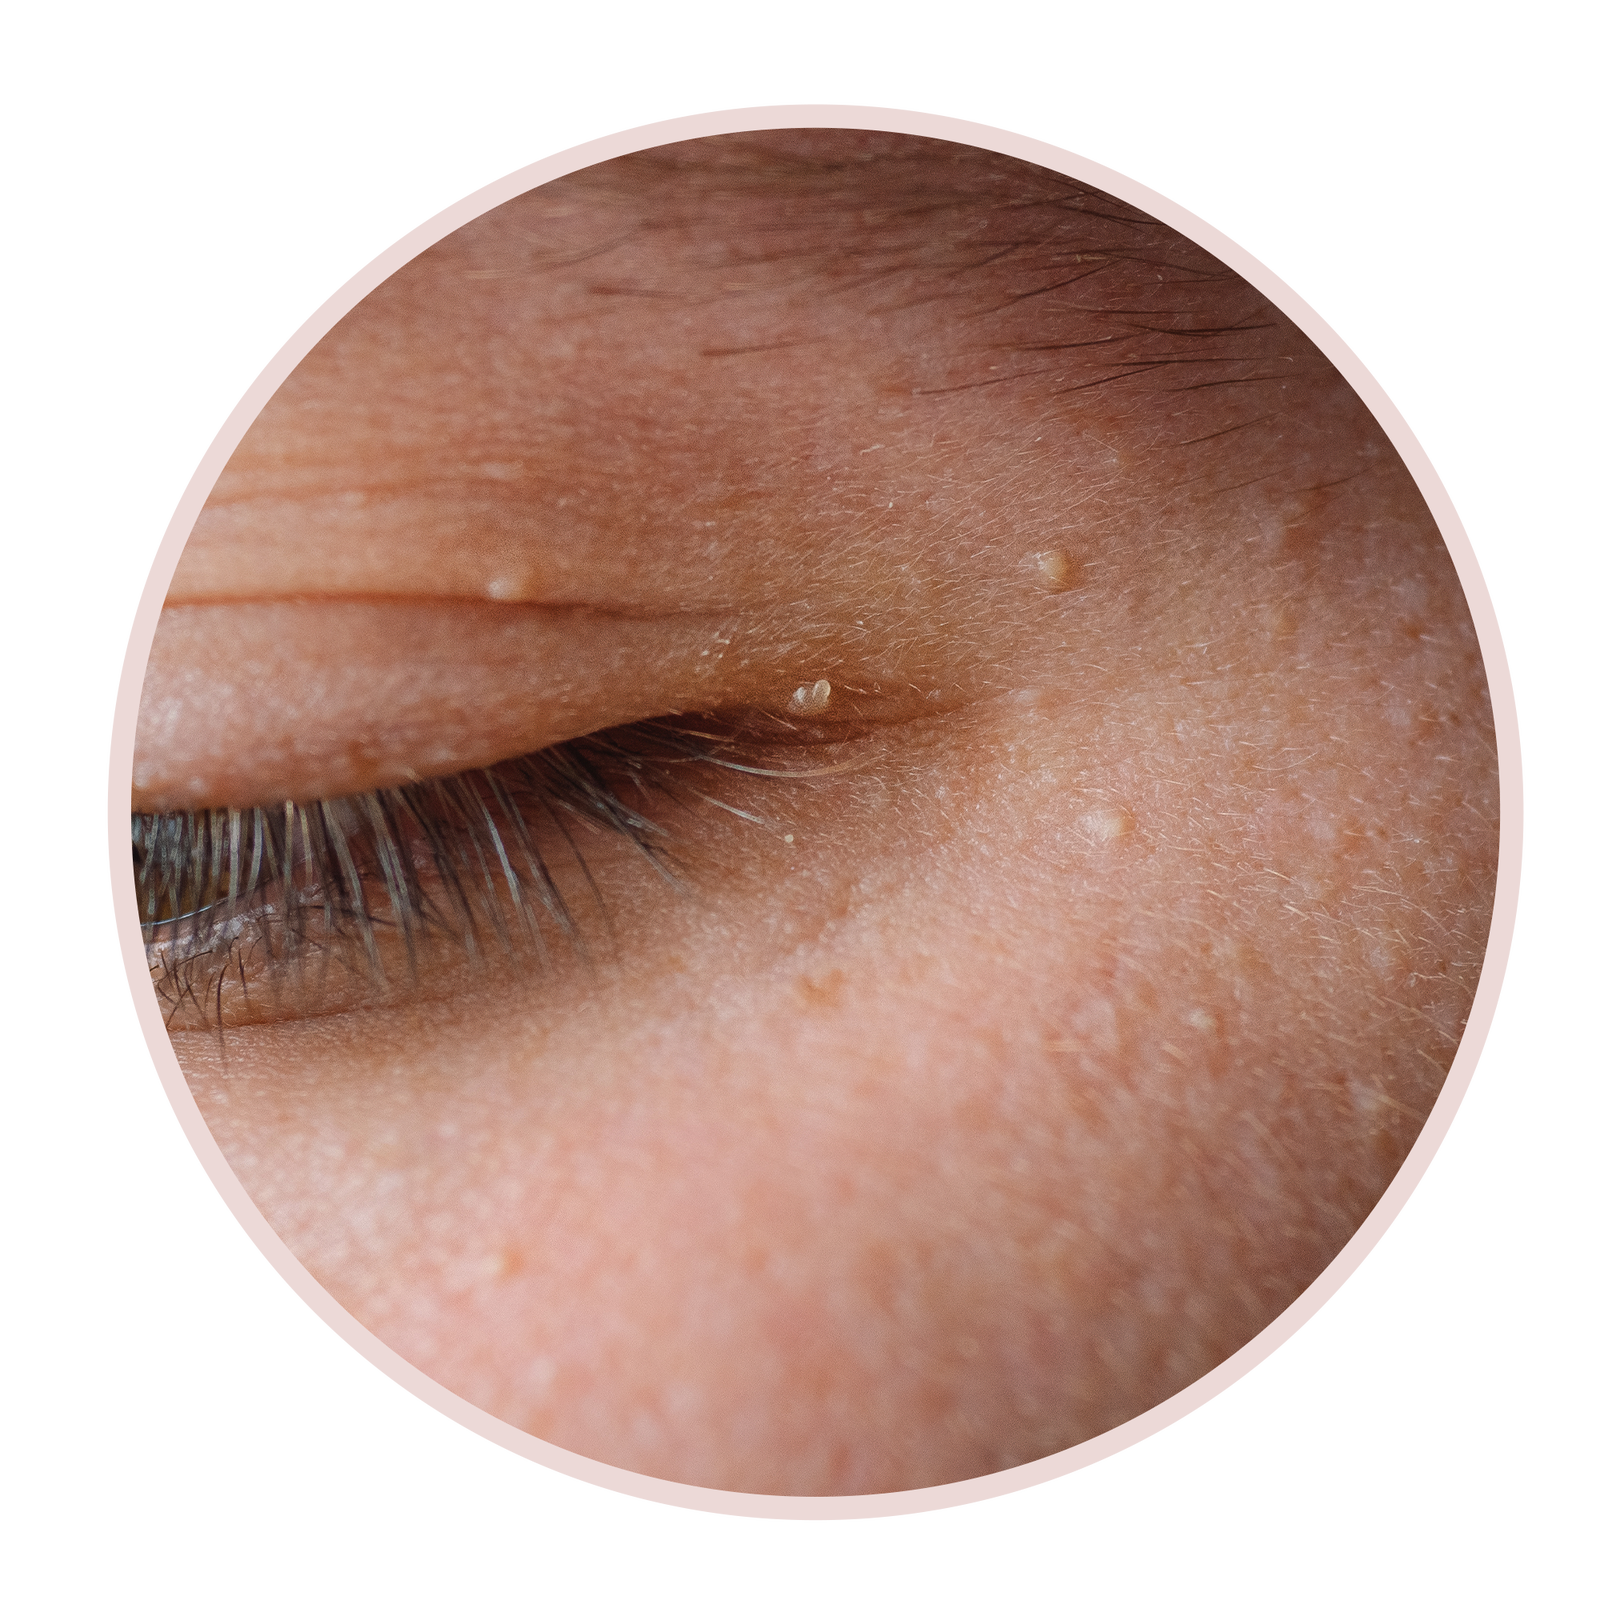 6 Arten von Augenlidbeulen und wie man sie laut Dermatologen behandelt